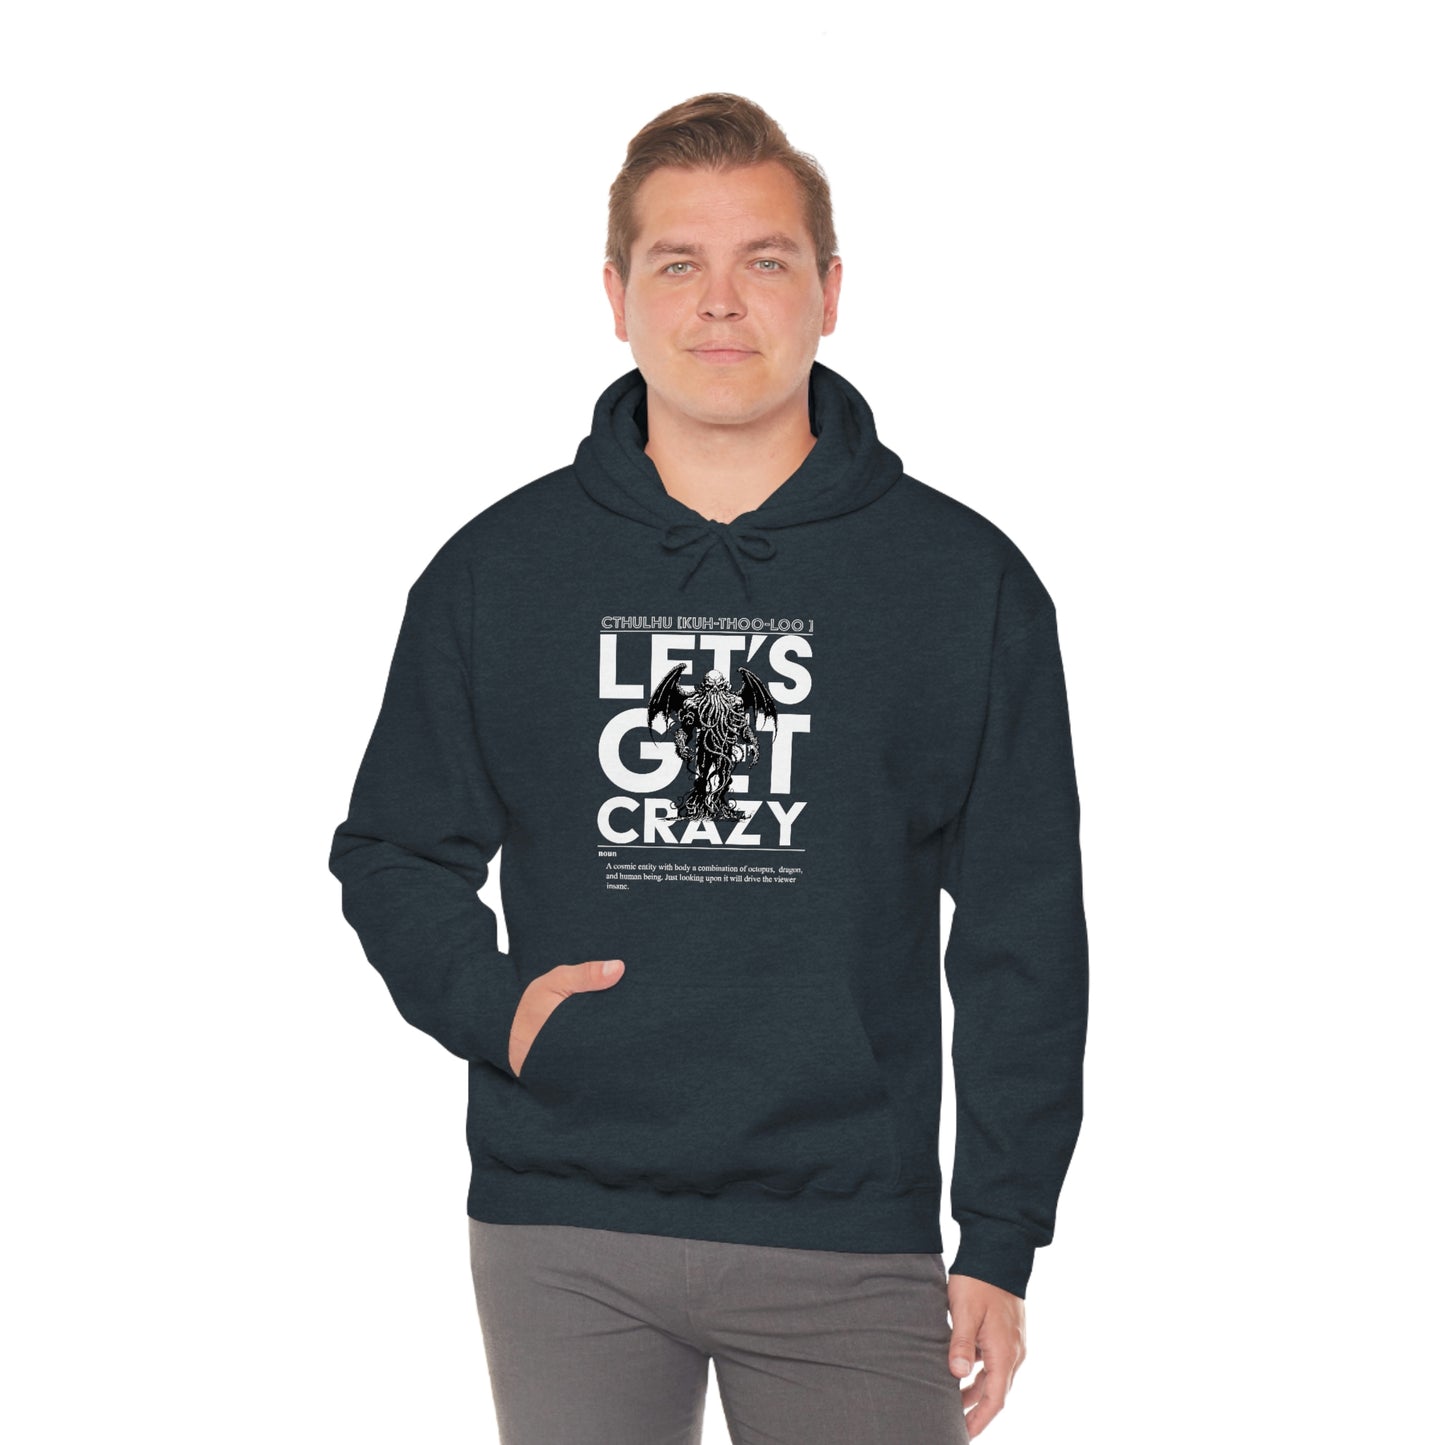 Let's Get Crazy (Original) - Men's Hooded Sweatshirt